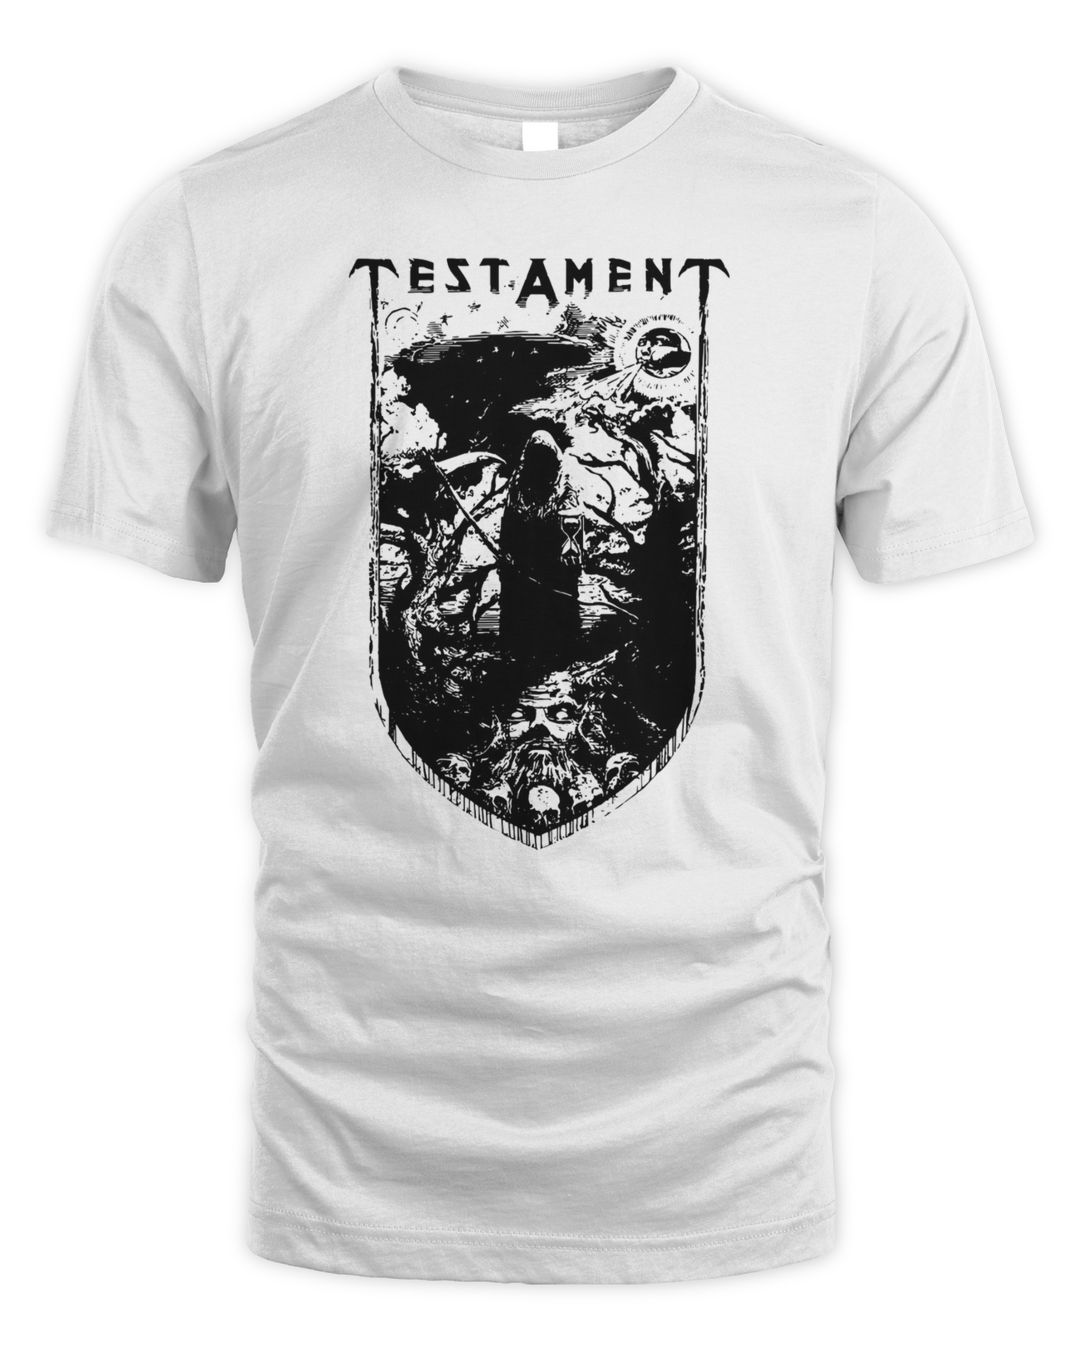 Testament Merch Reaper Bsb Tour Shirt